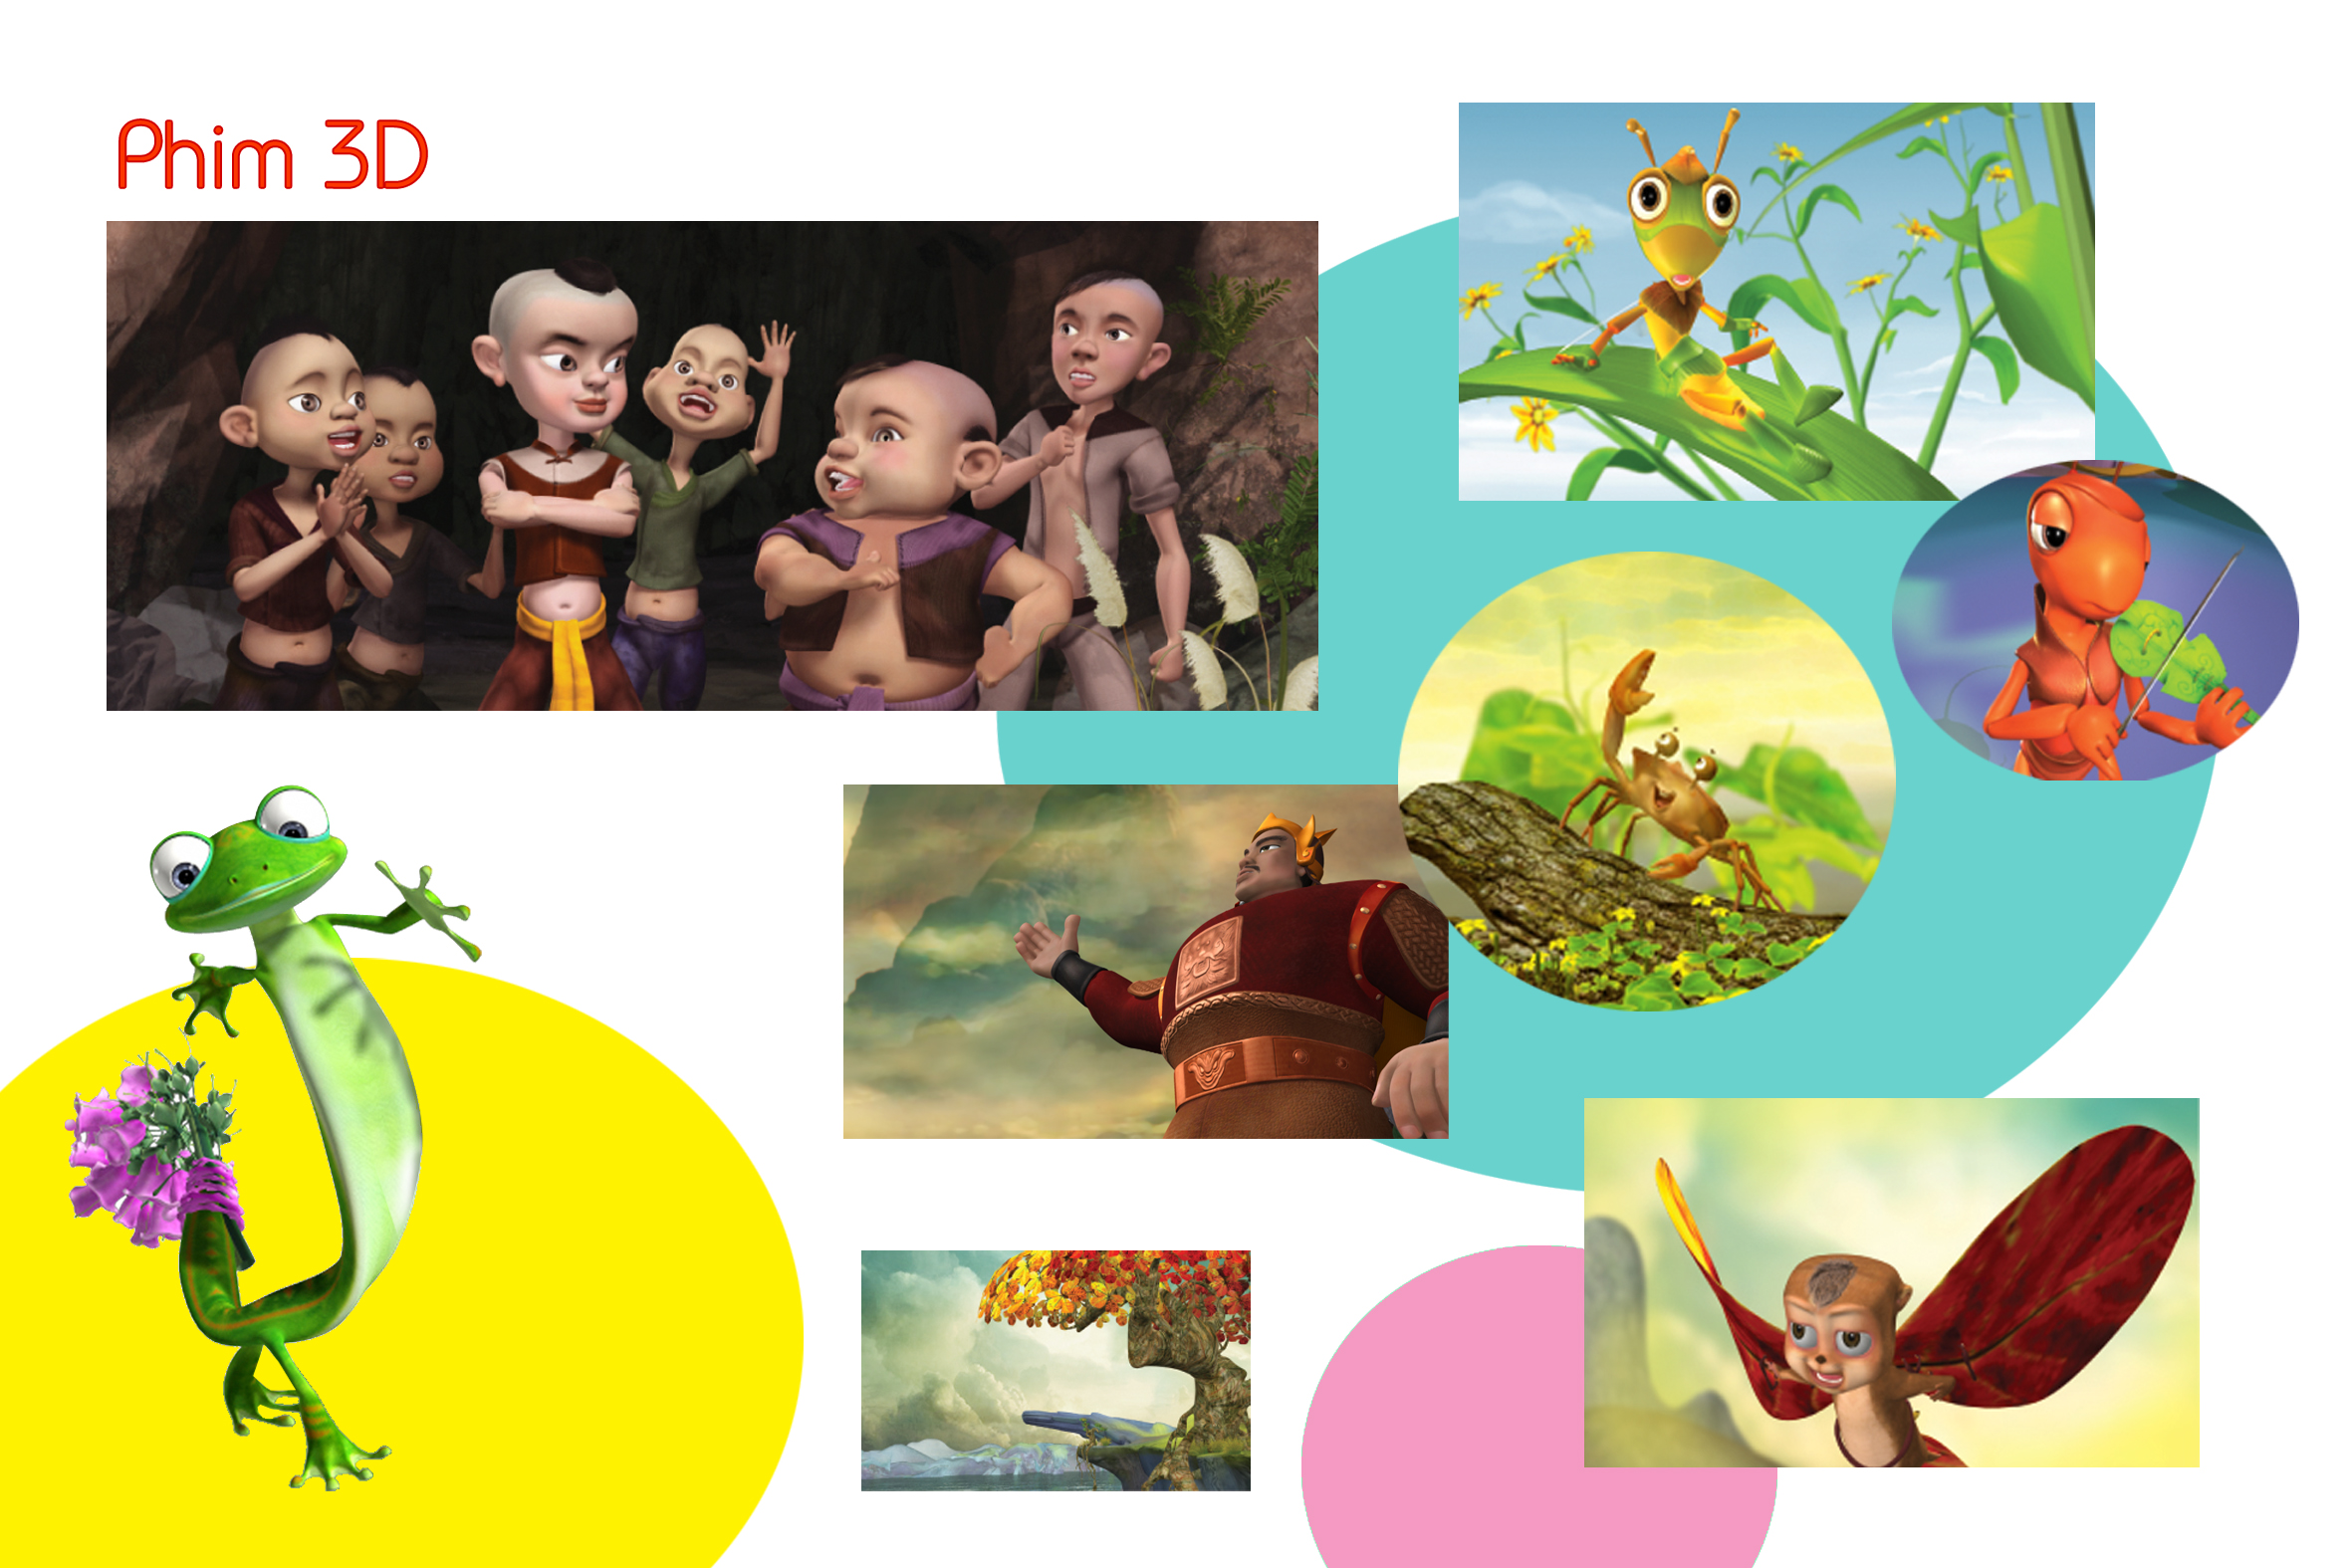 Hãy cùng xem lại những bộ phim hoạt hình Việt Nam hay nhất năm 2018 để tận hưởng những giây phút tuyệt vời. Từ tình cảm đến hài hước, các bộ phim hoạt hình đầy đủ các yếu tố thu hút để mang lại cho bạn sự lựa chọn tốt nhất. Hãy cùng đón xem những bộ phim hoạt hình Việt Nam hay nhất năm